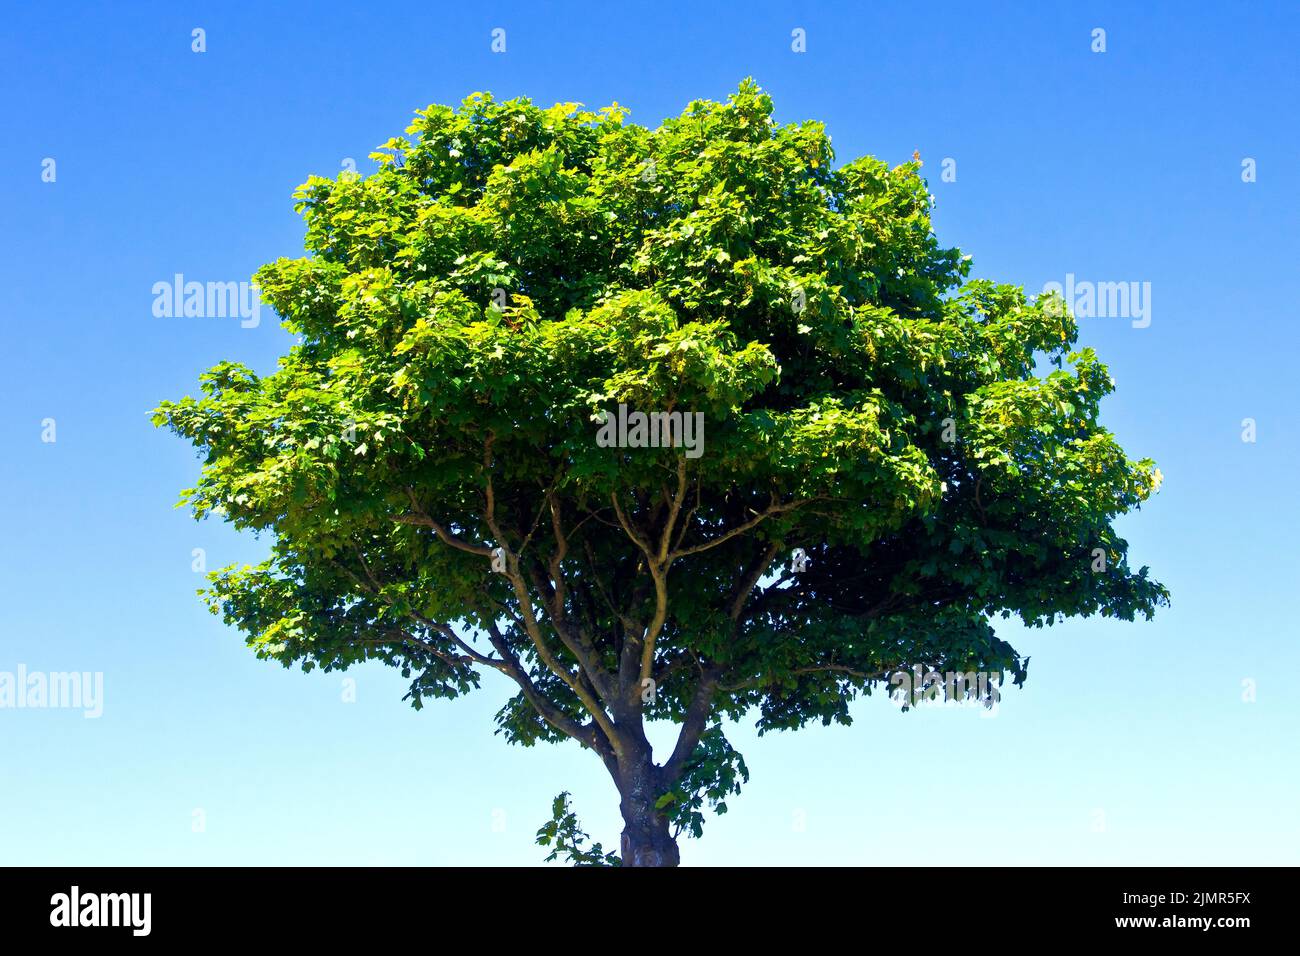 Sycamore (acer pseudoplatanus), ein Schuss eines einsamen, kleinen, jungen Baumes mit vollem Blatt, bei Sonnenschein und isoliert vor einem klaren blauen Himmel. Stockfoto